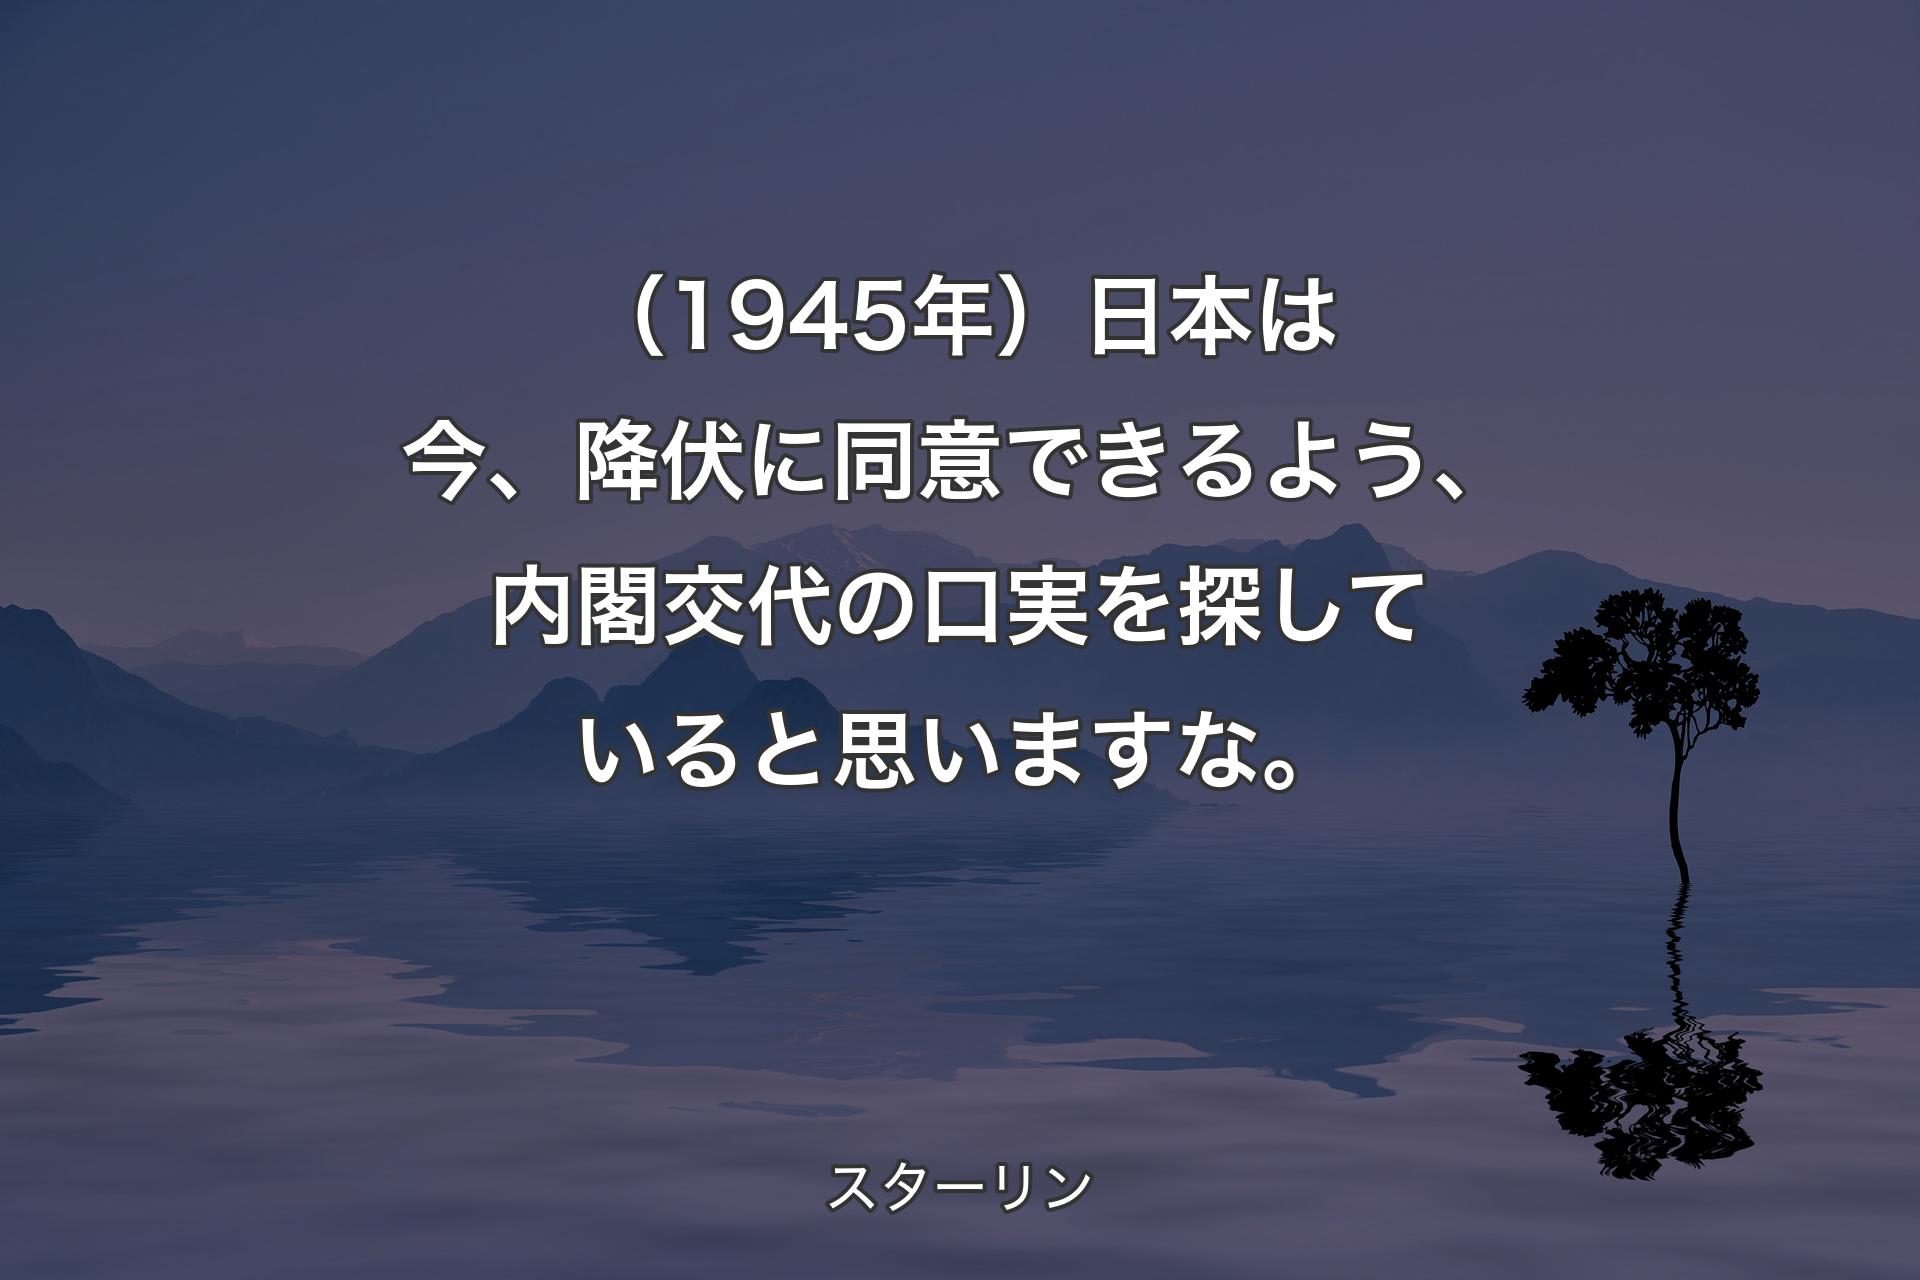 （1945年）日本は今、降伏に同意できるよう、内閣交代の口実を探していると思いますな。 - スターリン